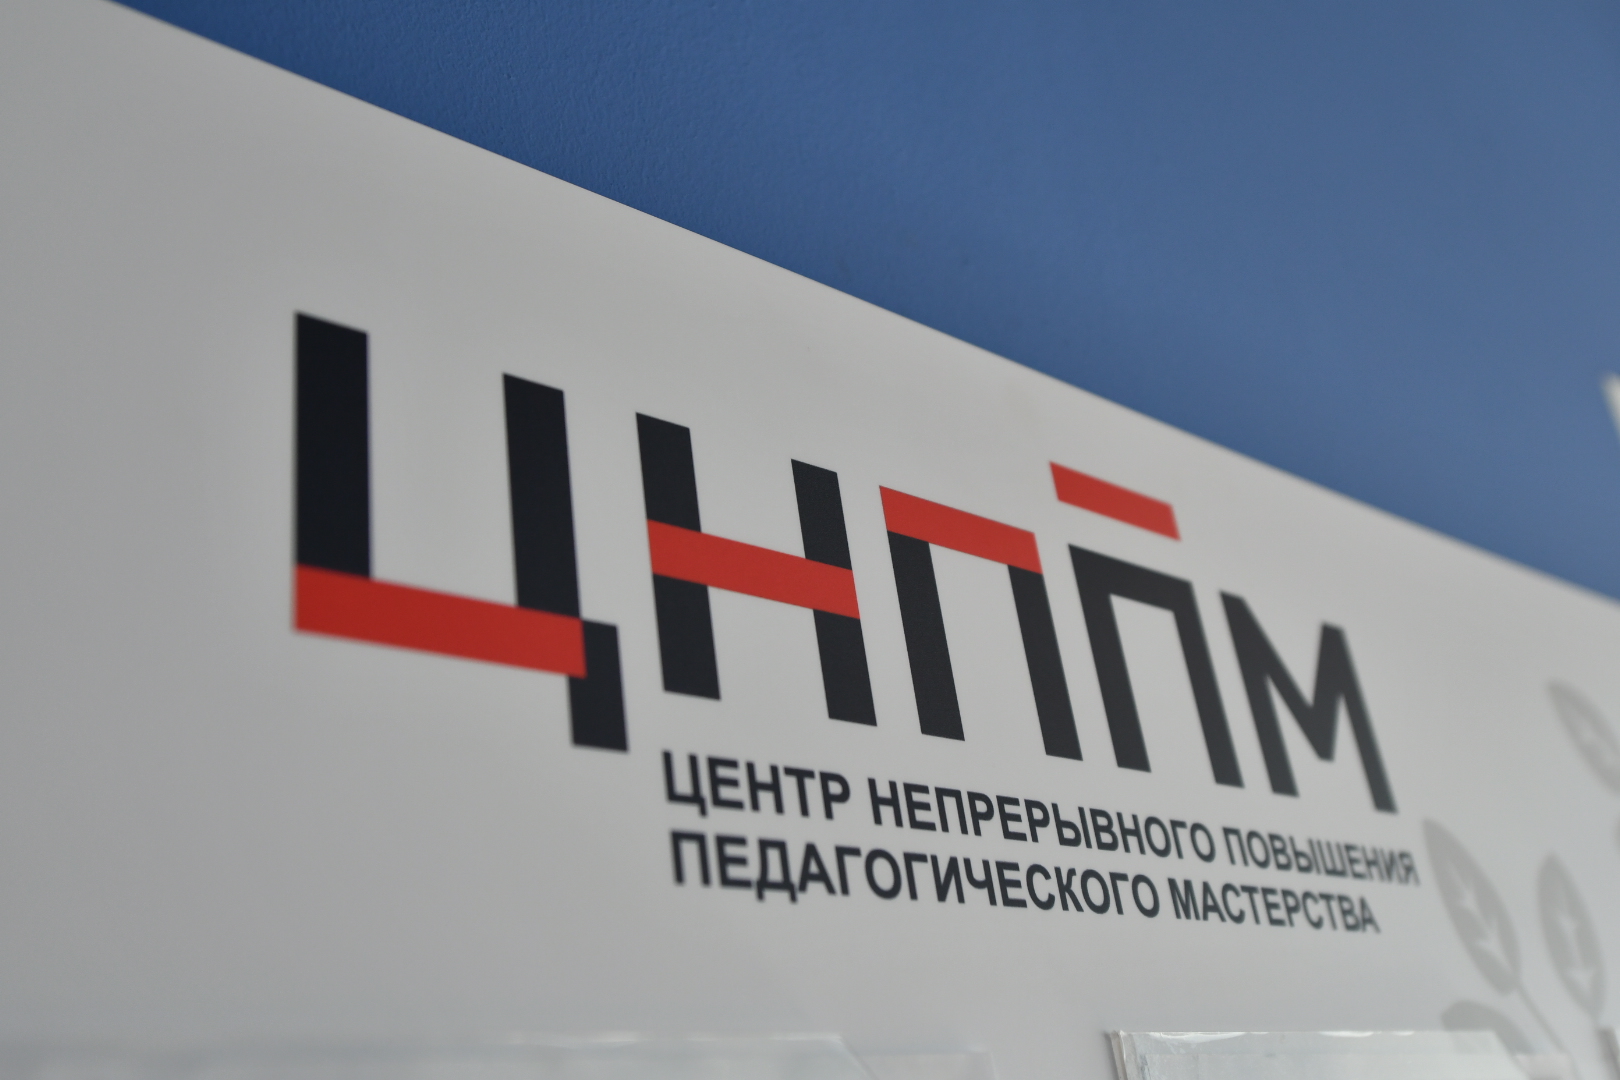 Первый Центр непрерывного повышения педагогического мастерства открылся в Кузбассе 